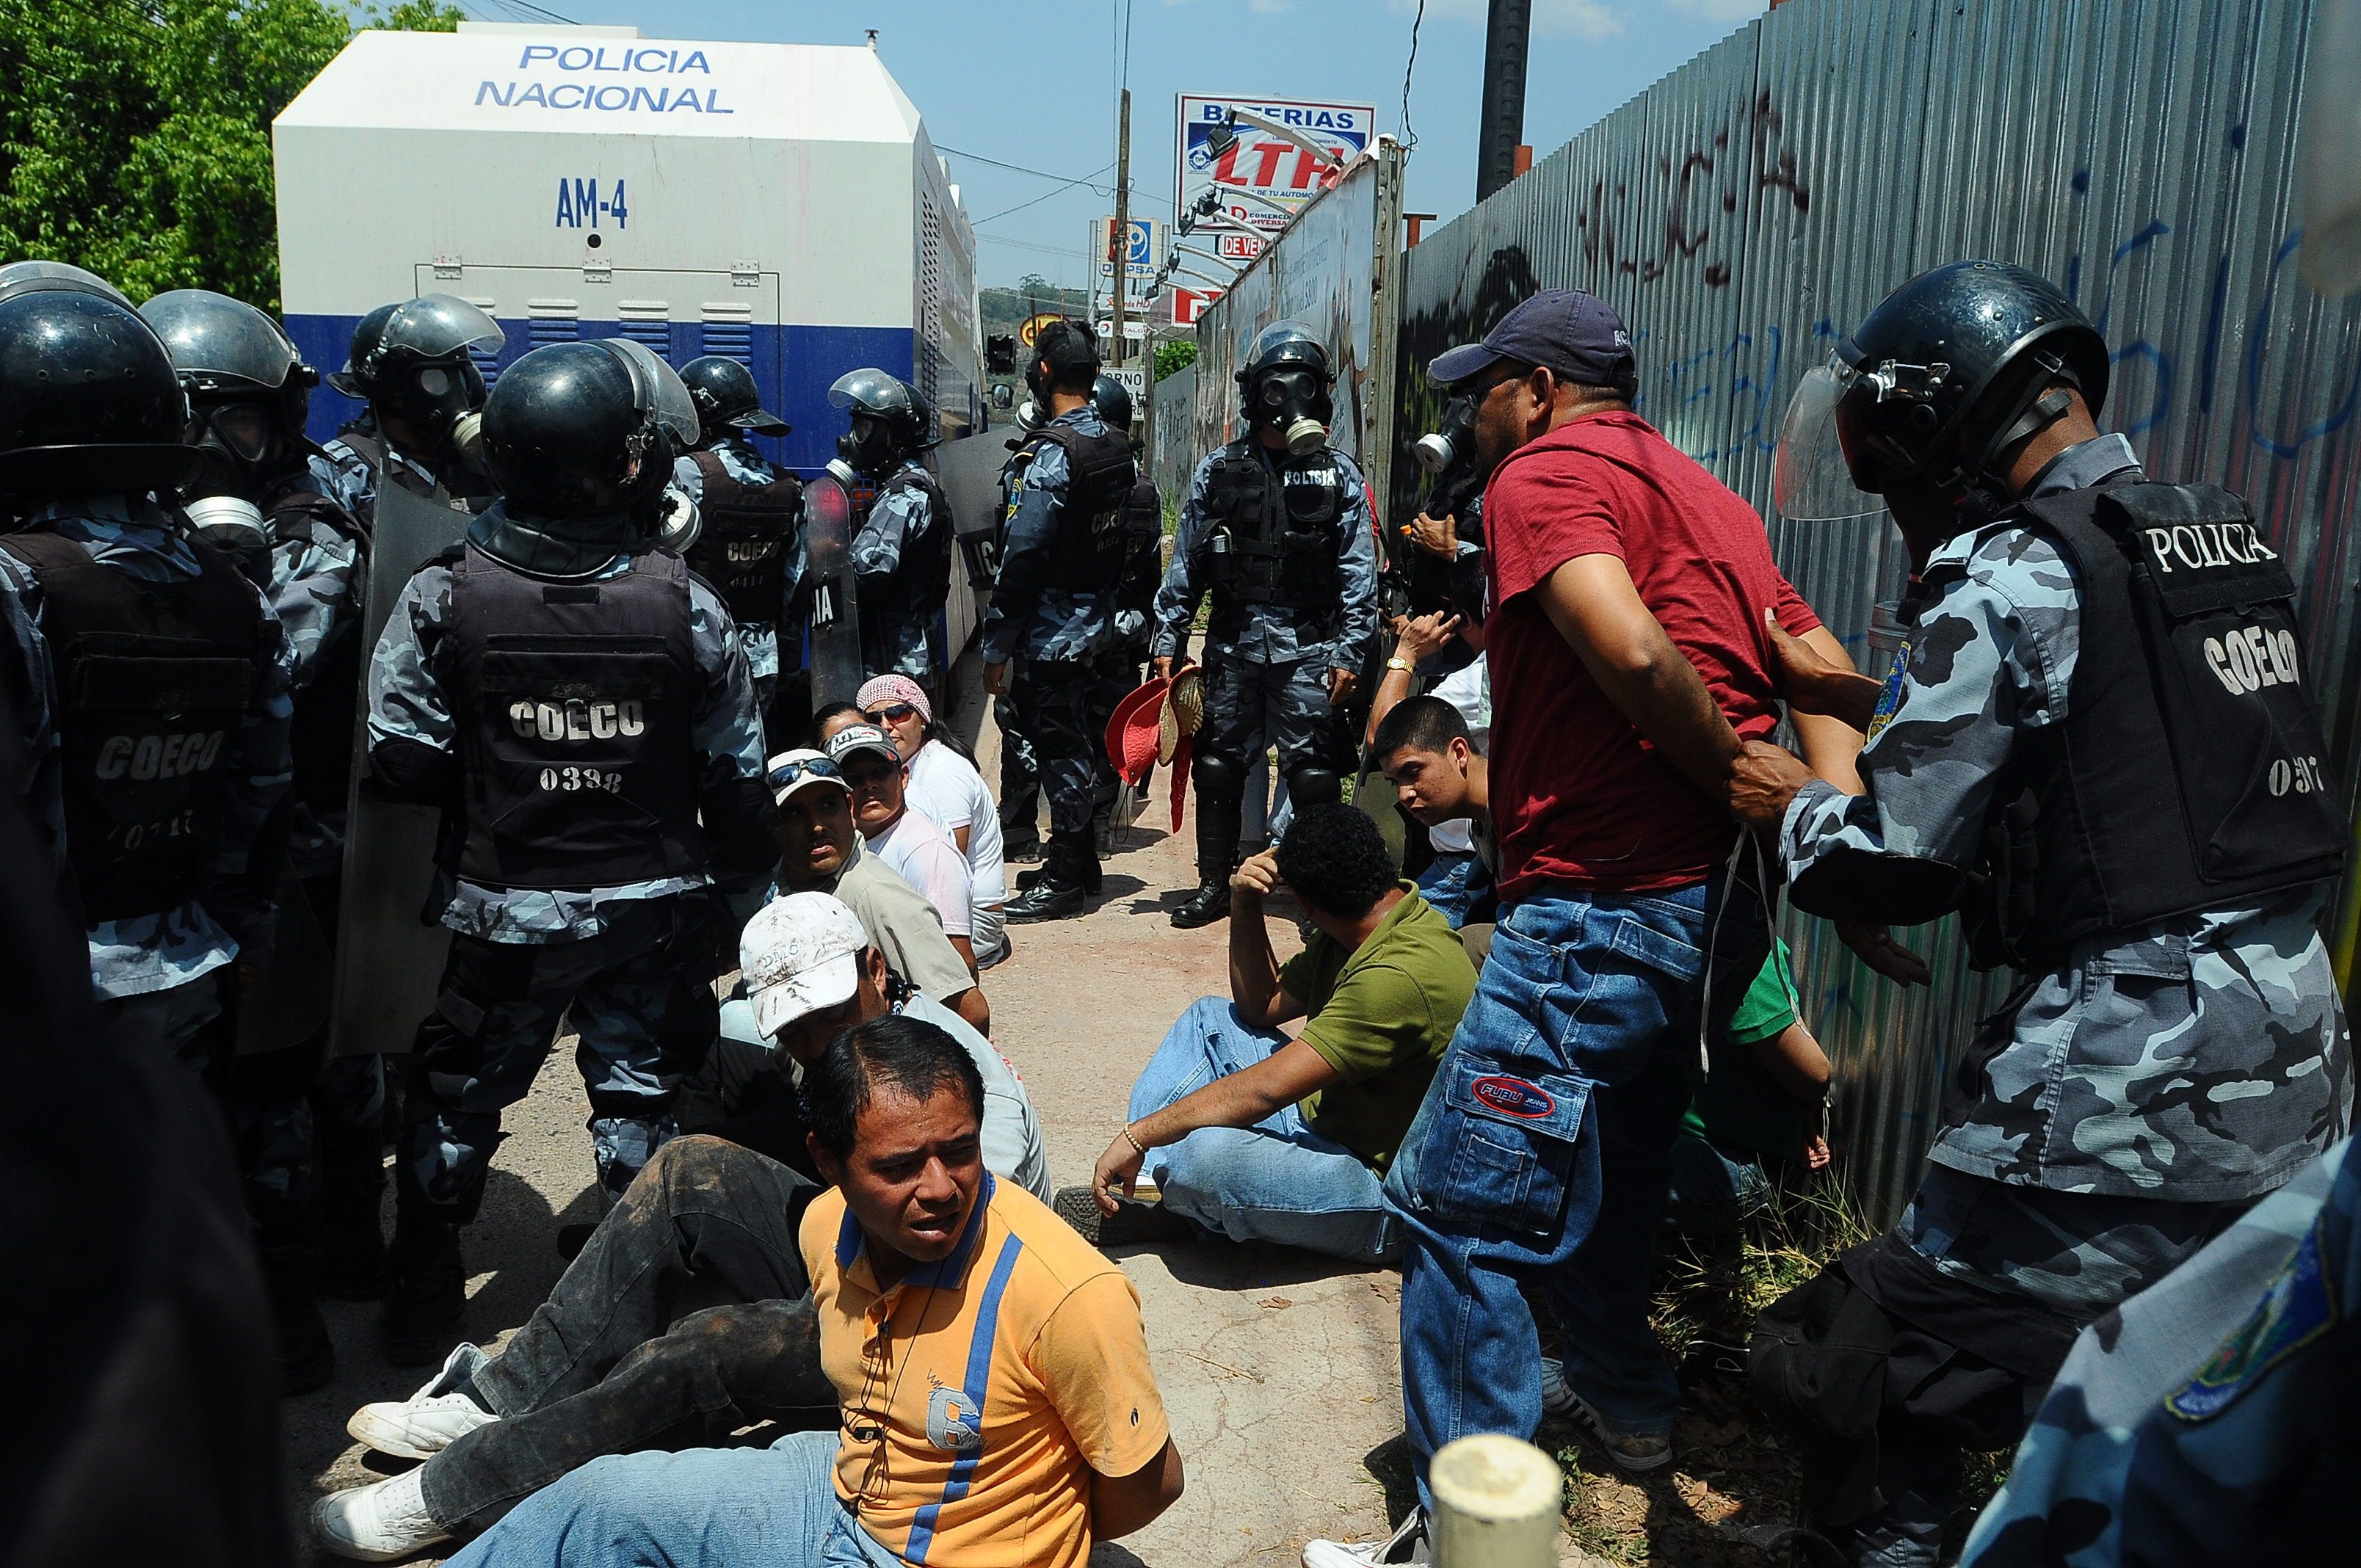 Las protesta de los ciudadanos usualmente son reprimidas por fuerzas de seguridad del Estado.